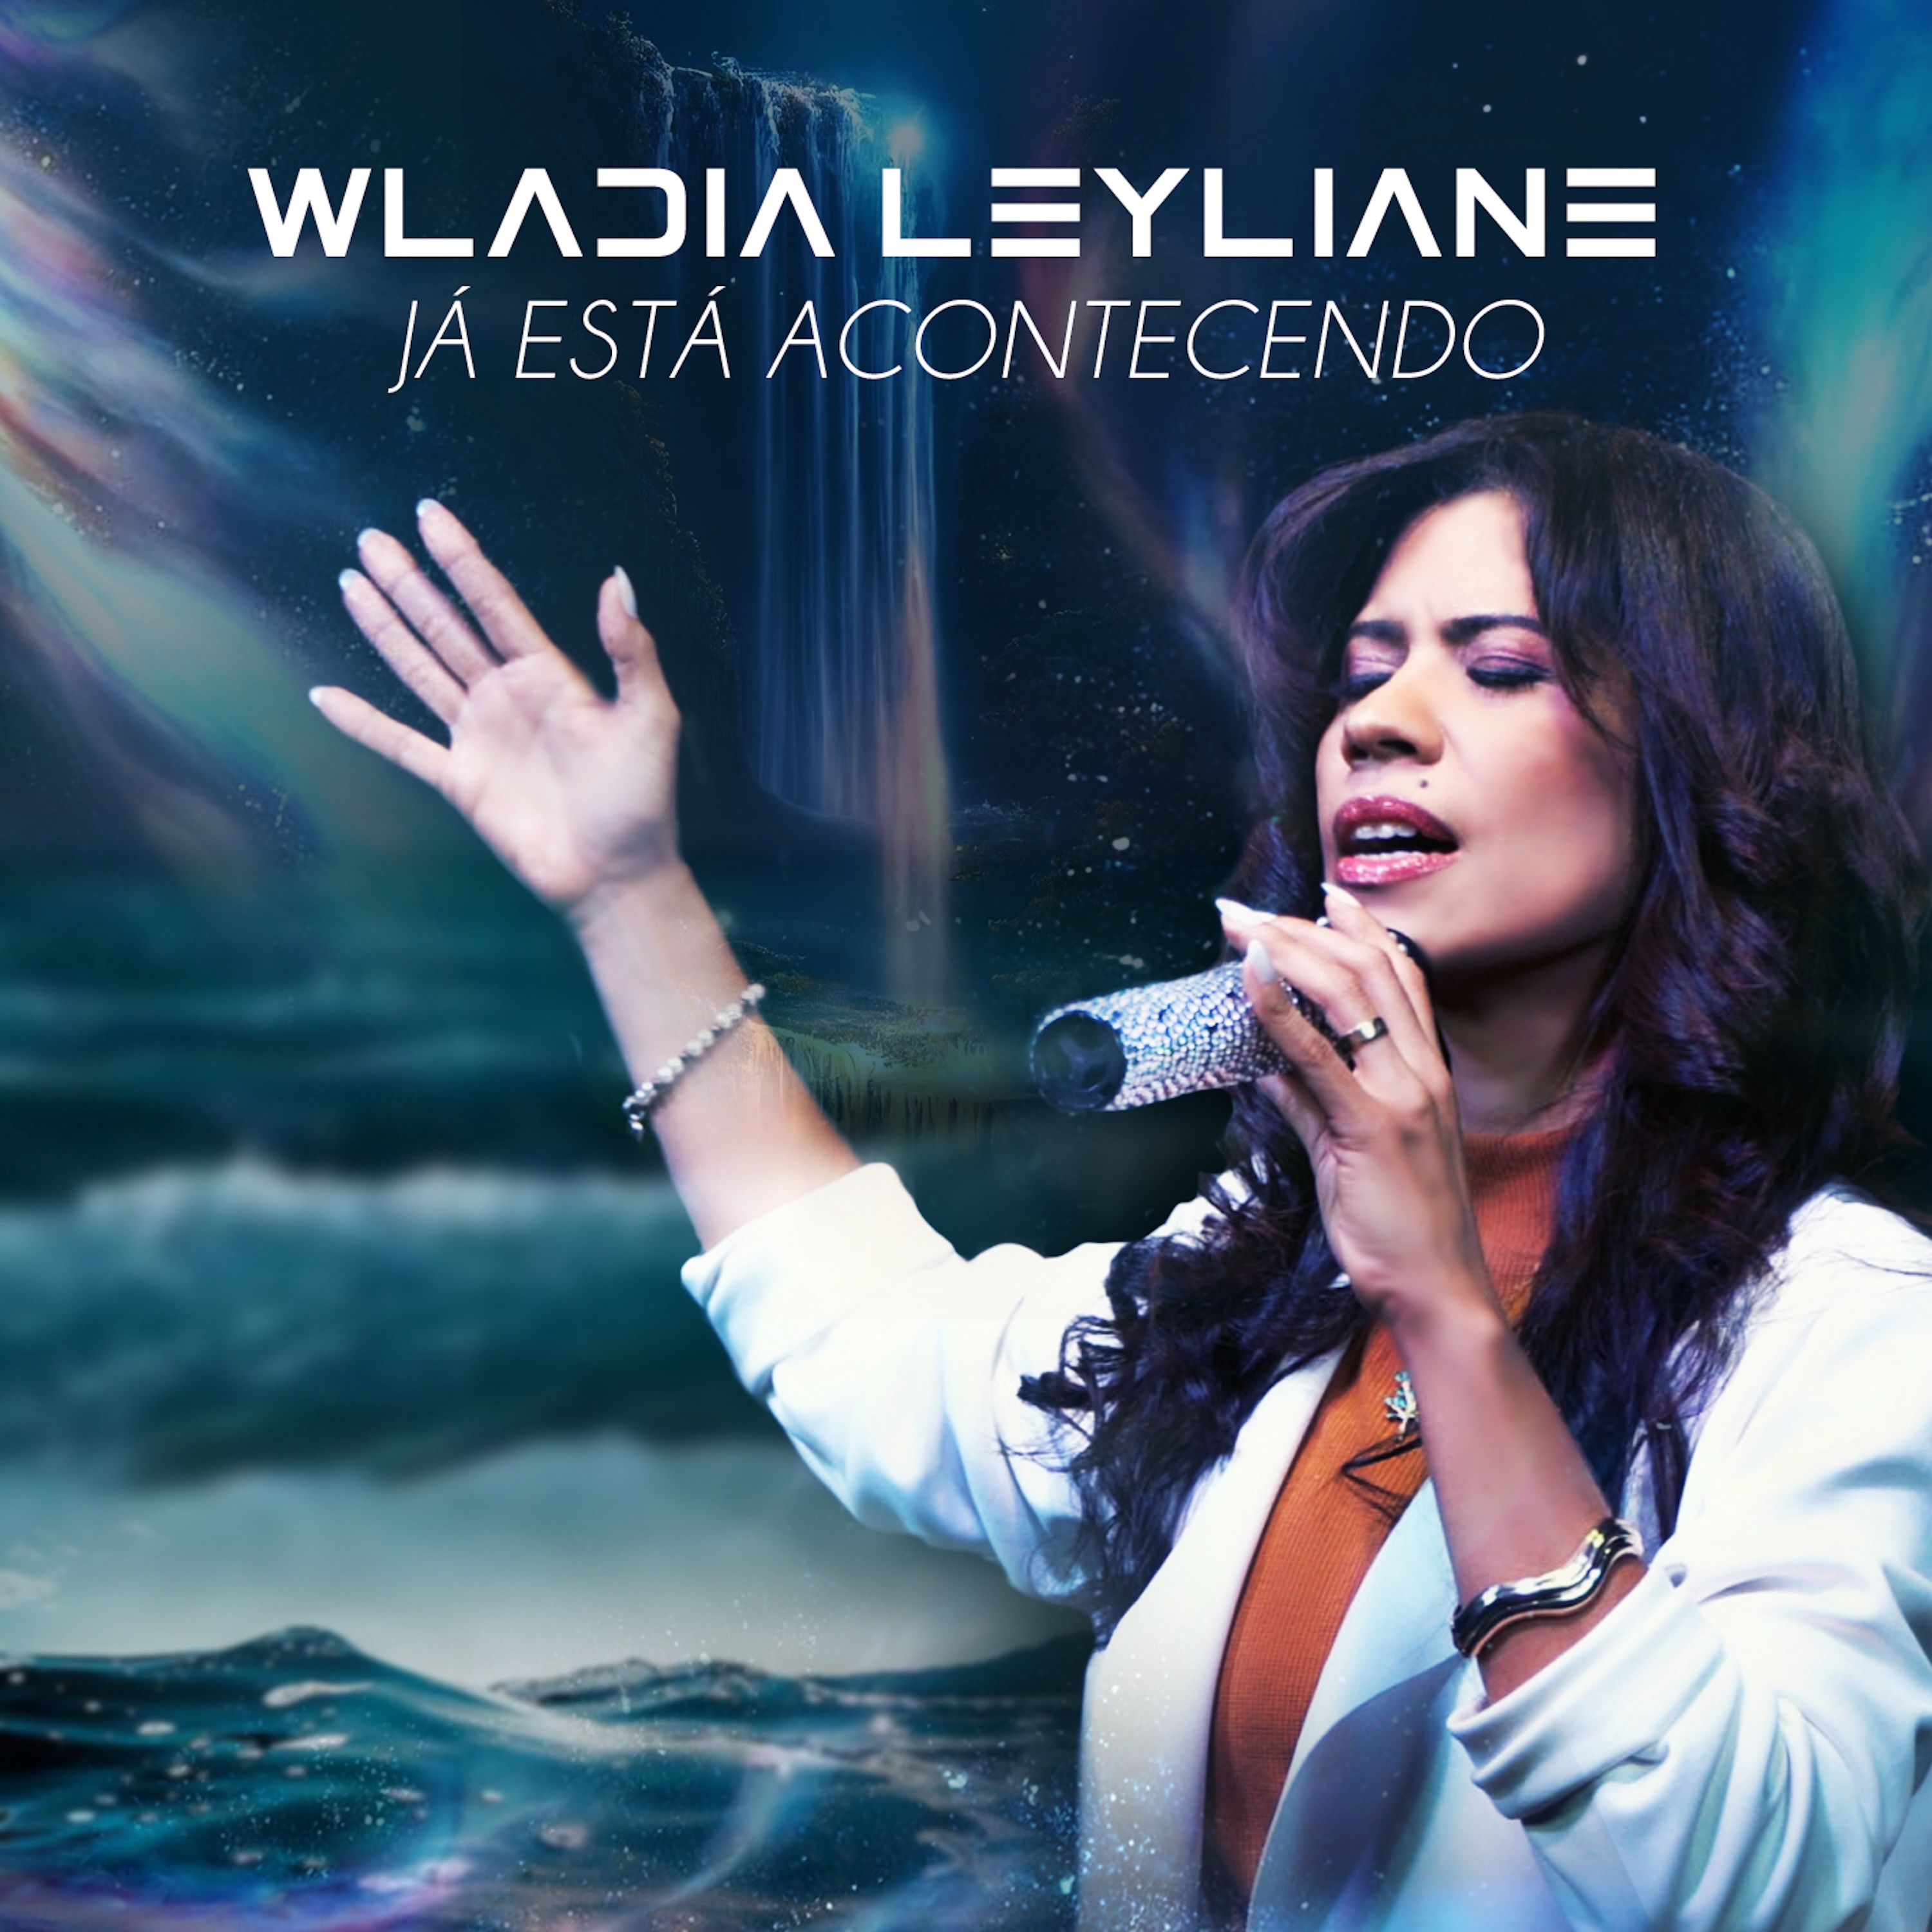 Single de Wladia Leyliane fala de algo muito especial que “Já Está Acontecendo”